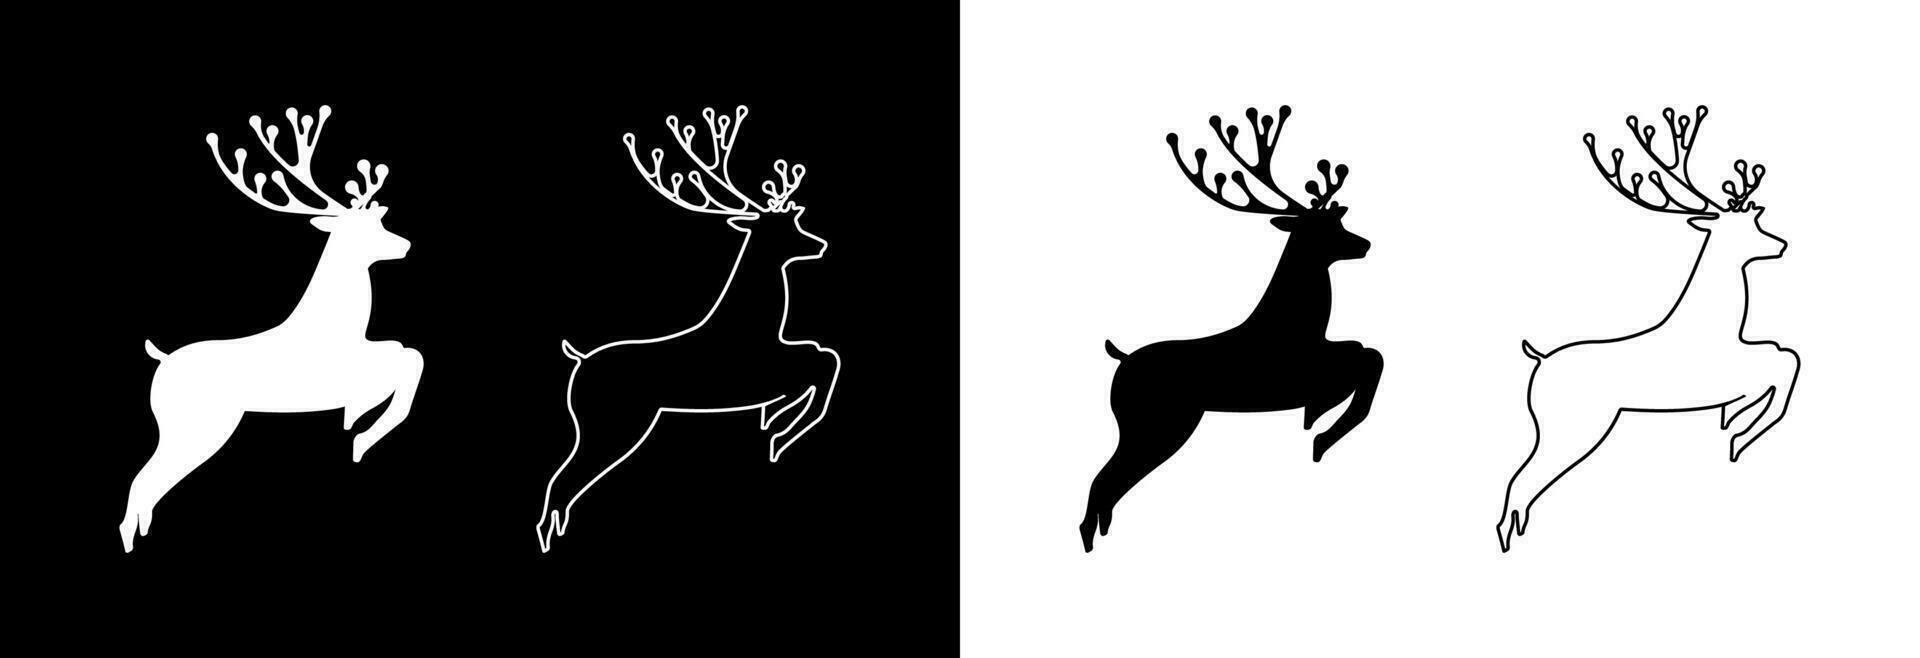 Hirsch Springen auf ein schwarz und Weiß Hintergrund. vektor